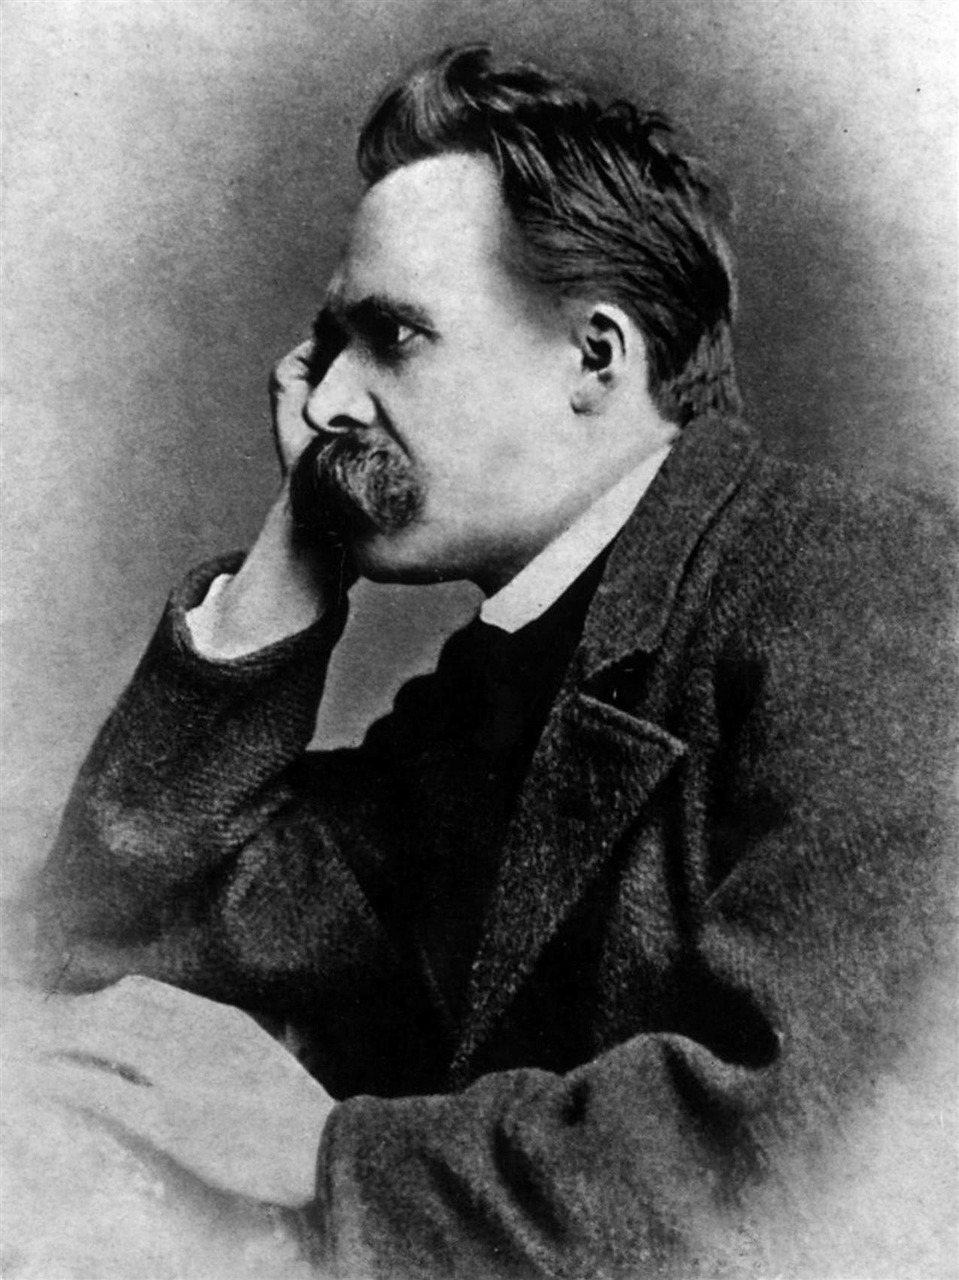 Le "Grand style", selon Nietzsche